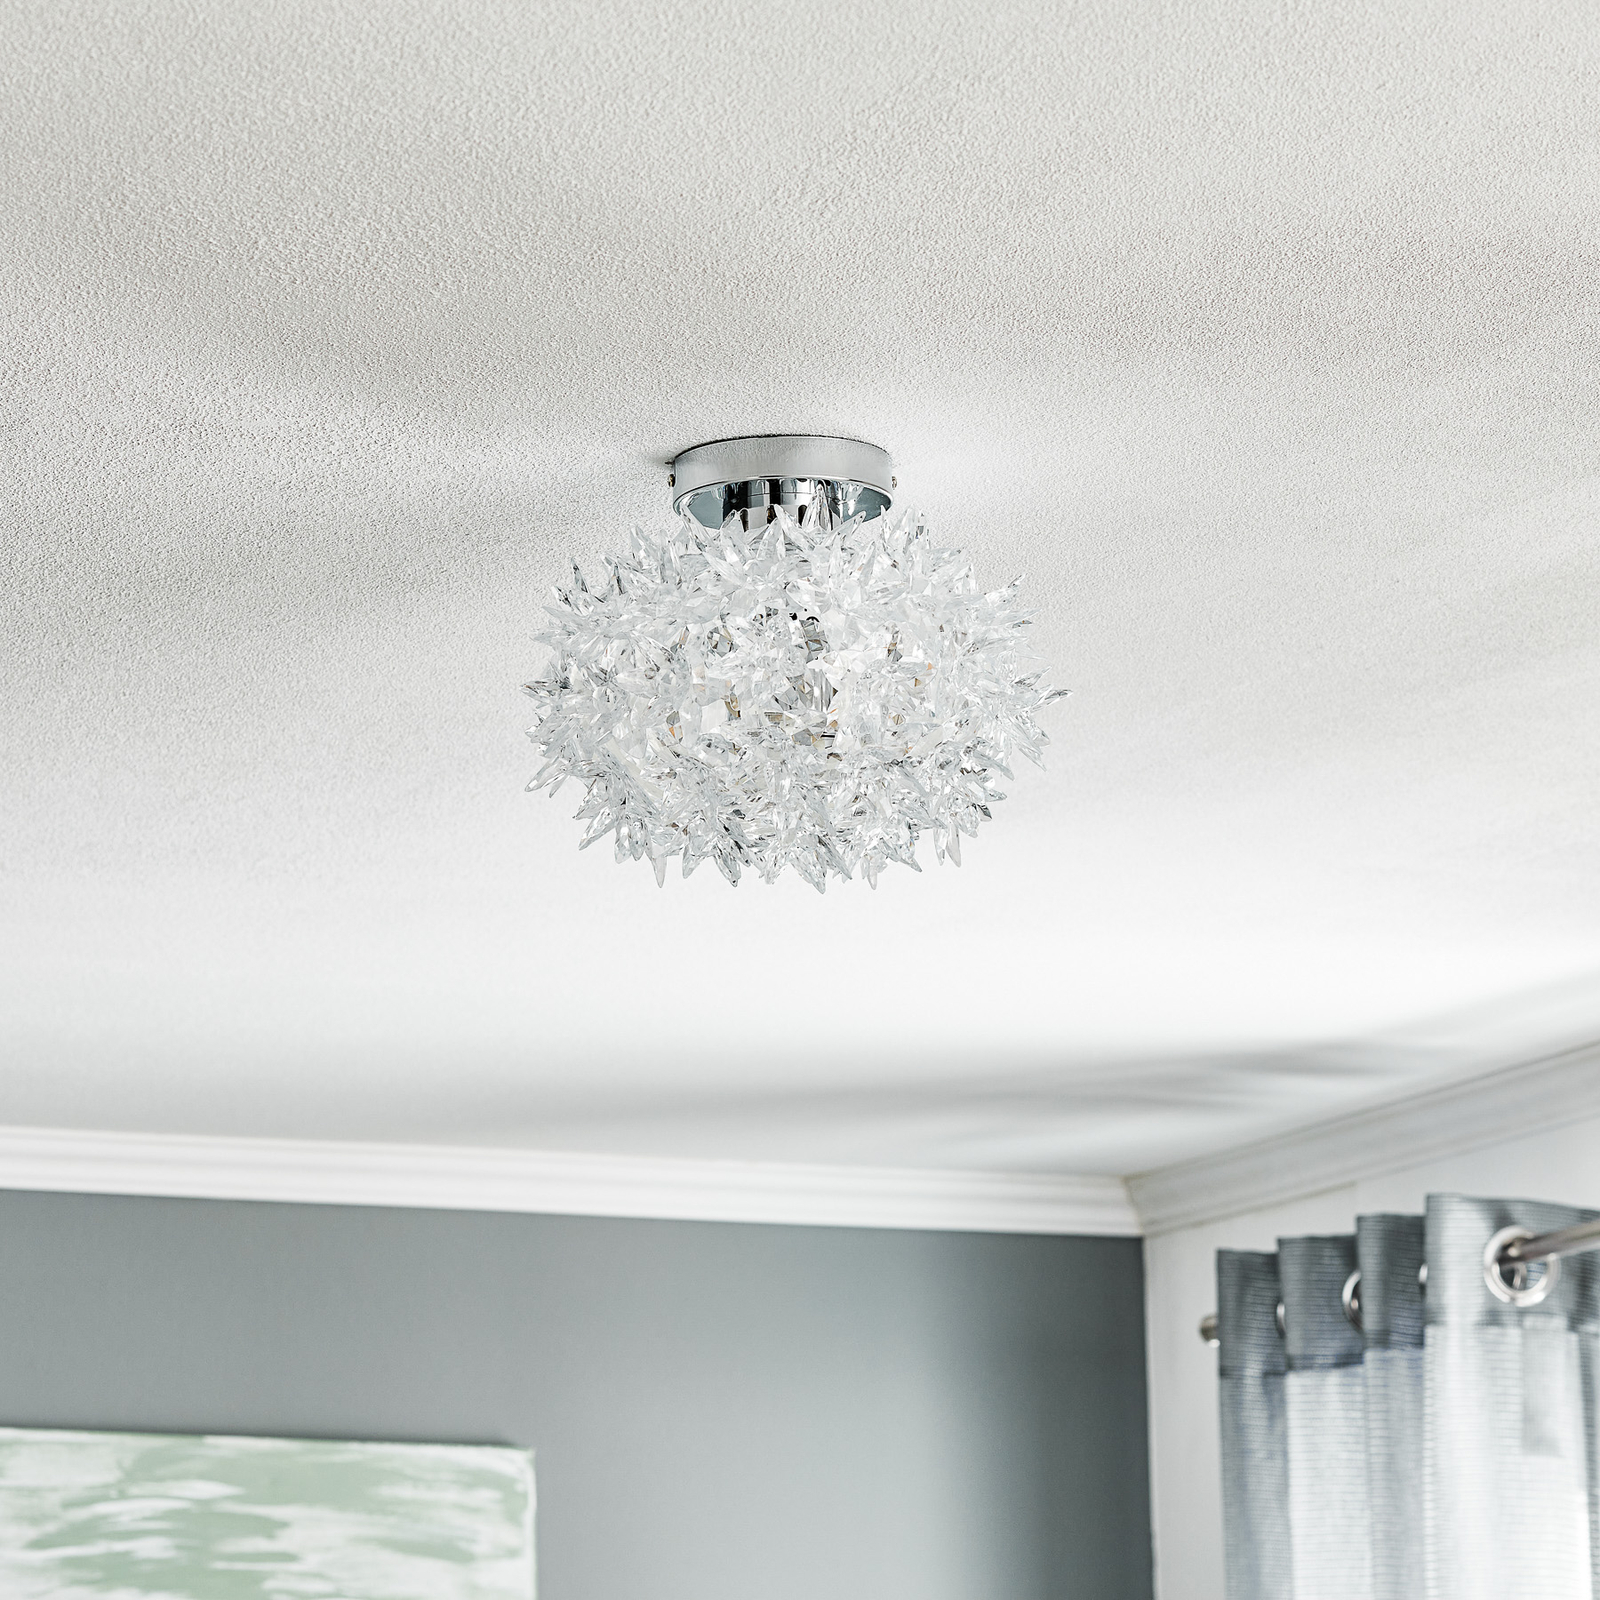 Kartell Bloom CW2 LED ceiling light, 28 cm